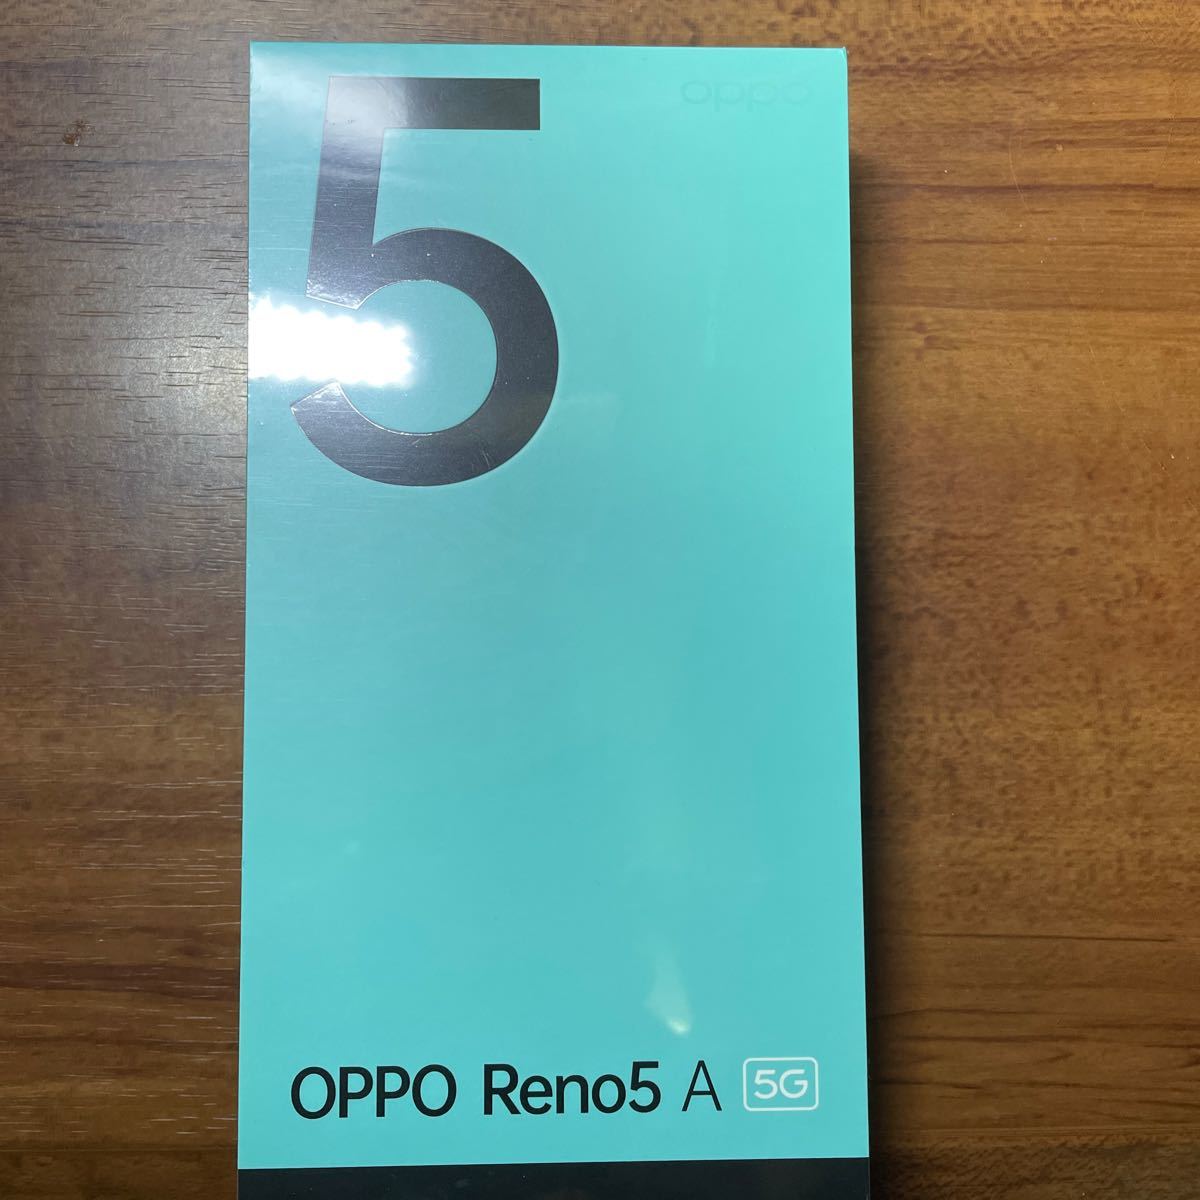 ブルー系超爆安新品未開封 OPPO Reno5 A アイスブルー スマートフォン 